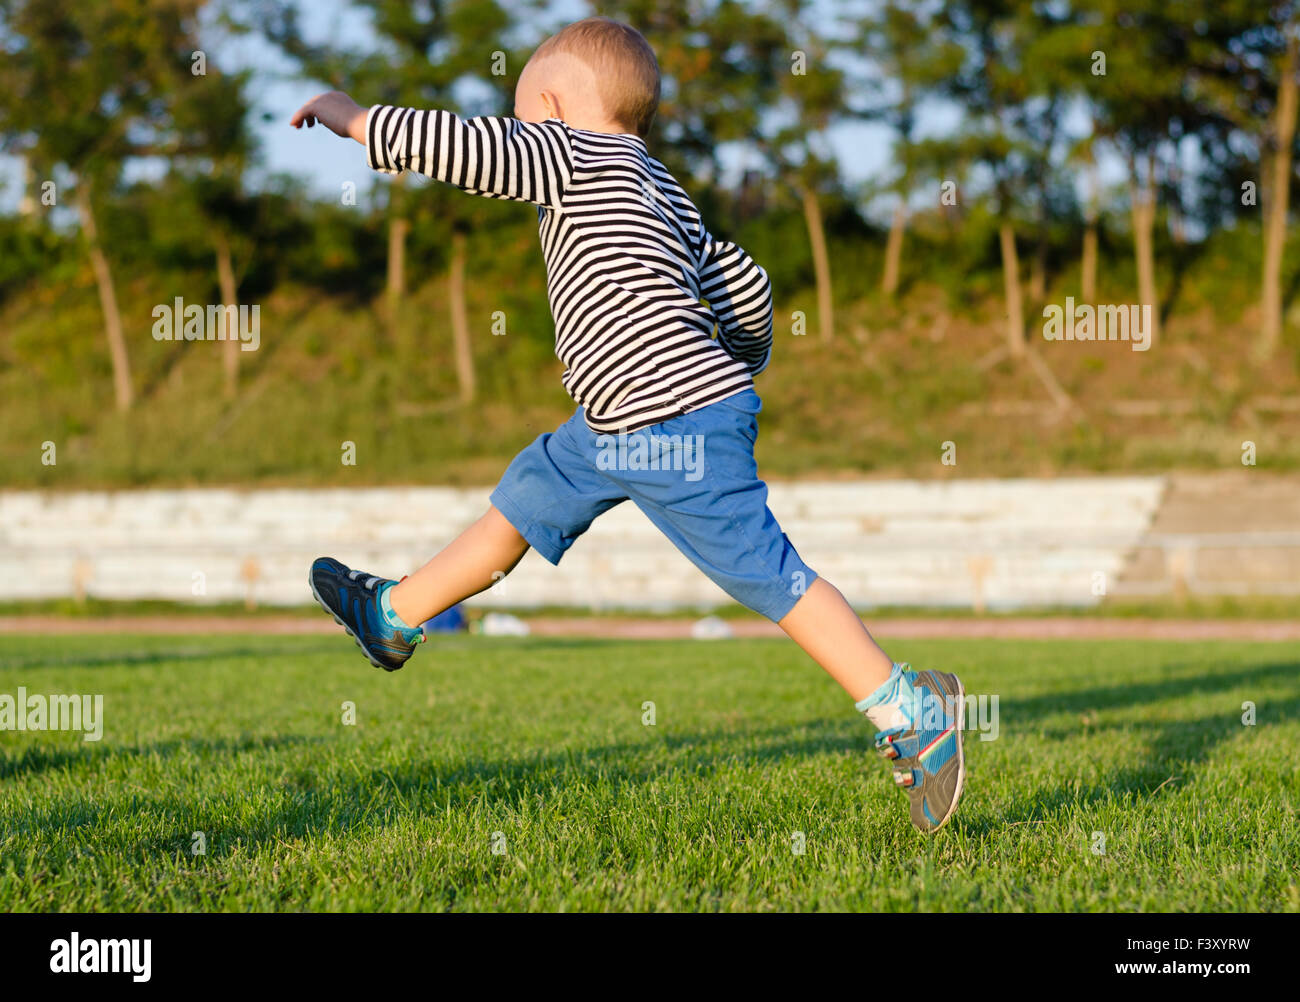 Little boy midair kicking a ball Stock Photo